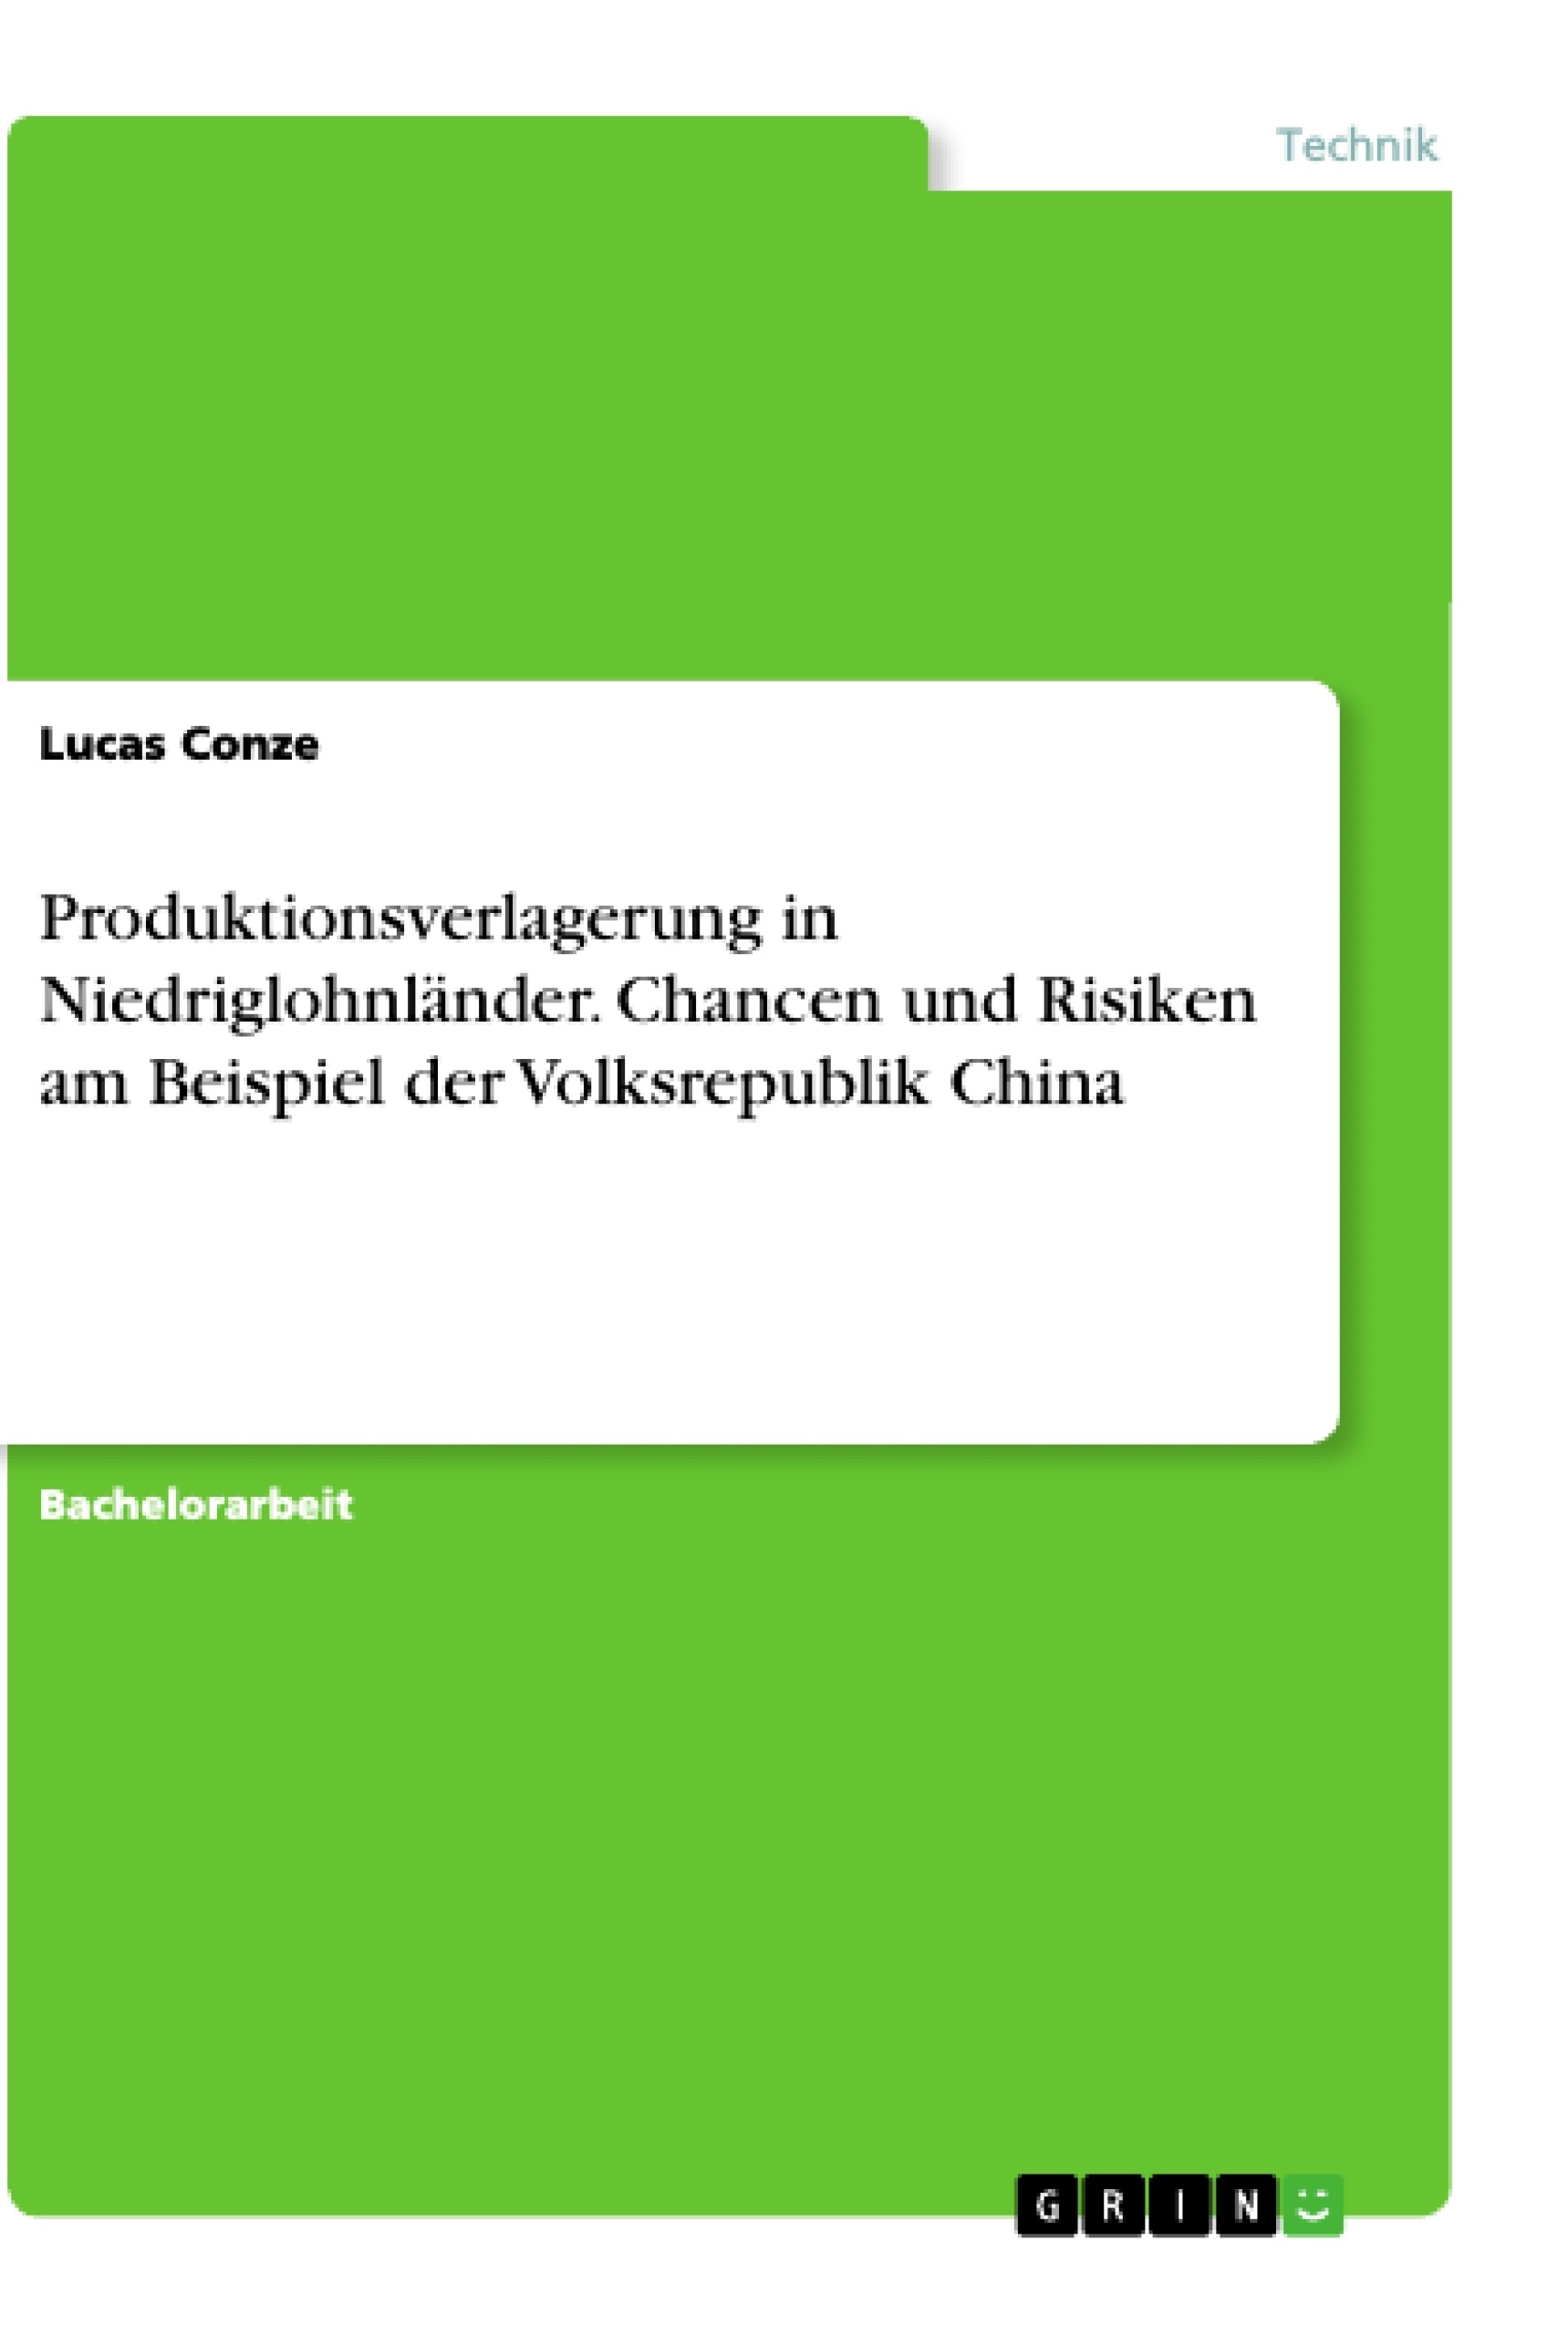 Título: Produktionsverlagerung in Niedriglohnländer. Chancen und Risiken am Beispiel der Volksrepublik China